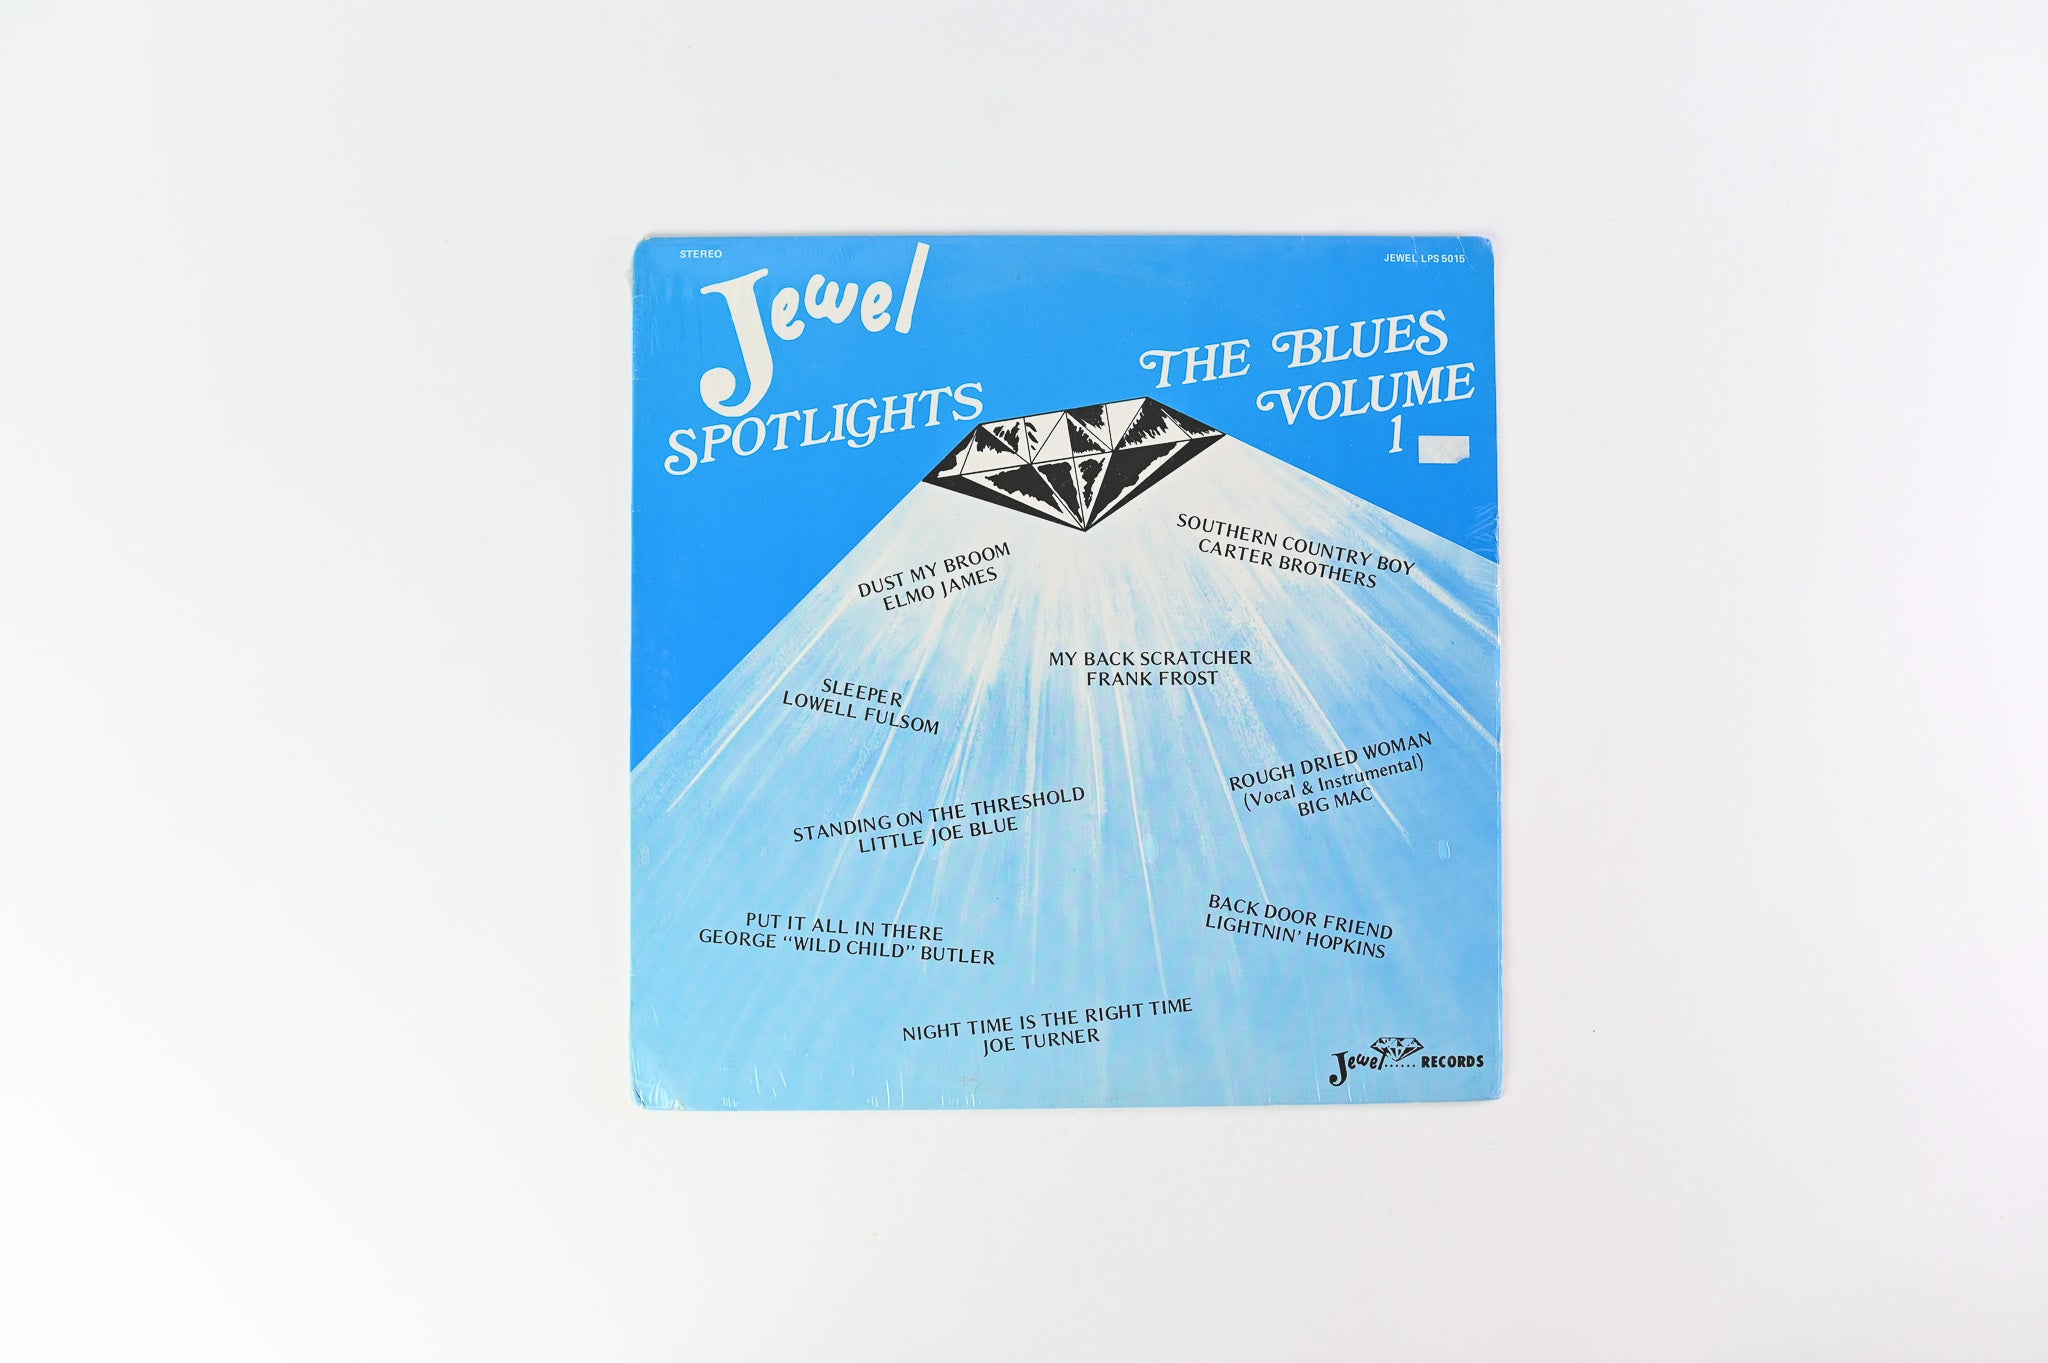 Various - Jewel Spotlights The Blues Volume 1 on  Jewel - Sealed